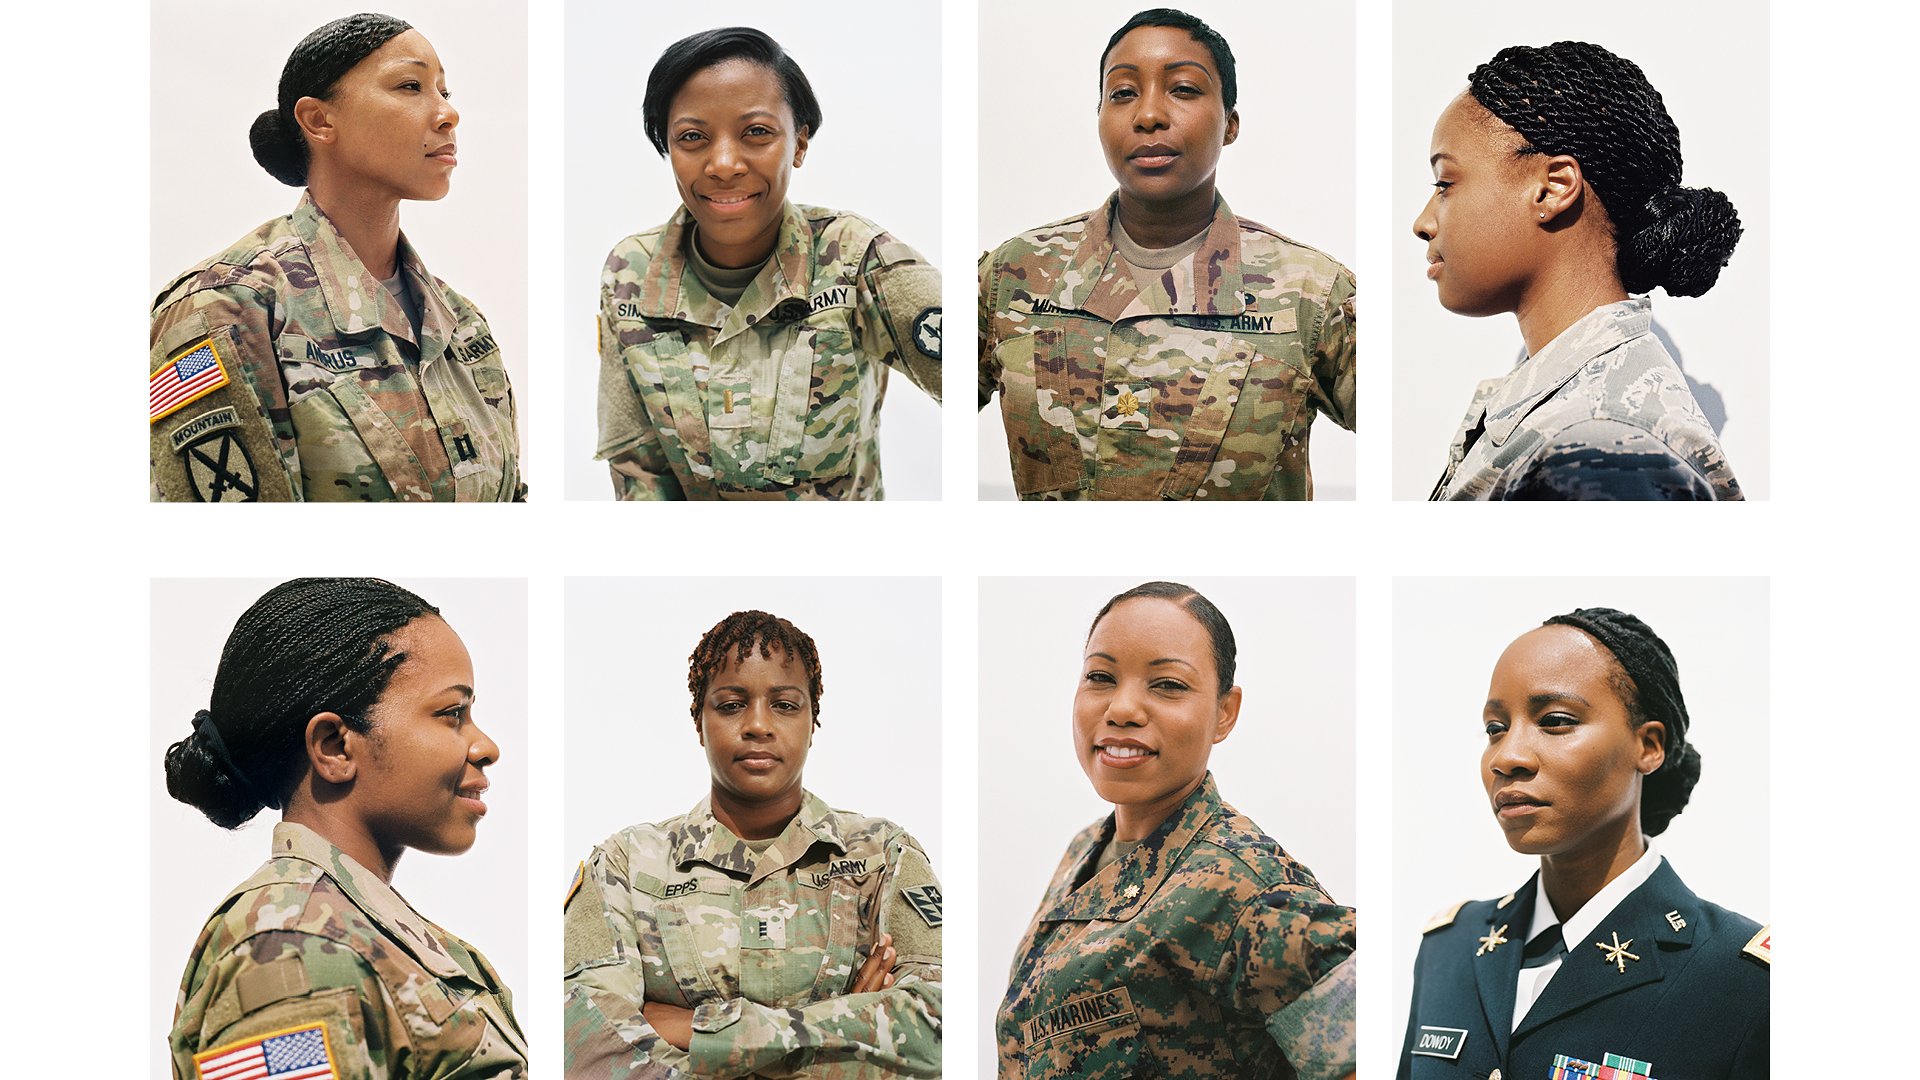 Nem kell többé hajat vasalniuk az afroamerikai katonáknak